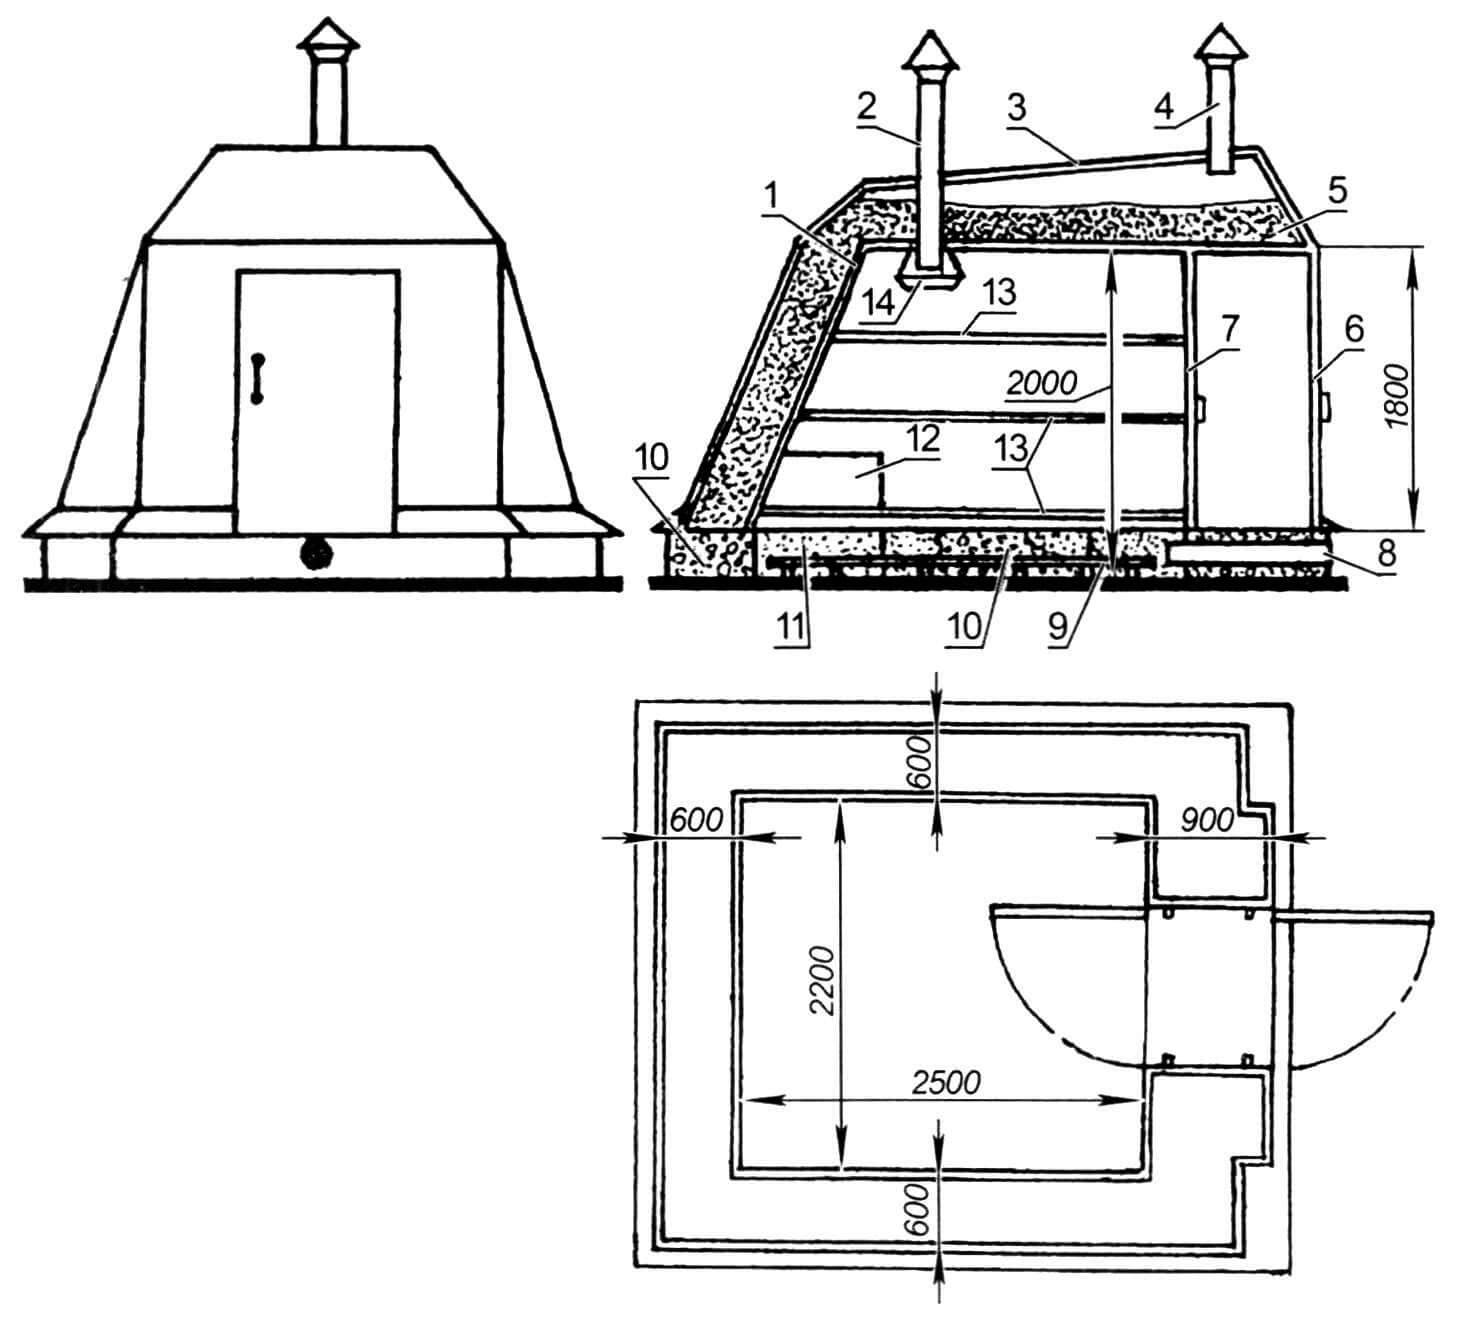 Общий вид и габаритные размеры погреба: 1- обшивка стен, внутренняя; 2 - труба вентиляции погреба; 3 - обшивка стен, наружная; 4 - труба вентиляции утеплителя; 5 - утеплитель; 6 - дверь наружная; 7 - дверь внутренняя; 8 - труба вентиляционная; 9 - решетка настила; 10 - опоры фундамента; 11 - пенопласт; 12 - ящик для хранения картофеля; 13-стеллажи; 14 - емкость для сбора конденсата